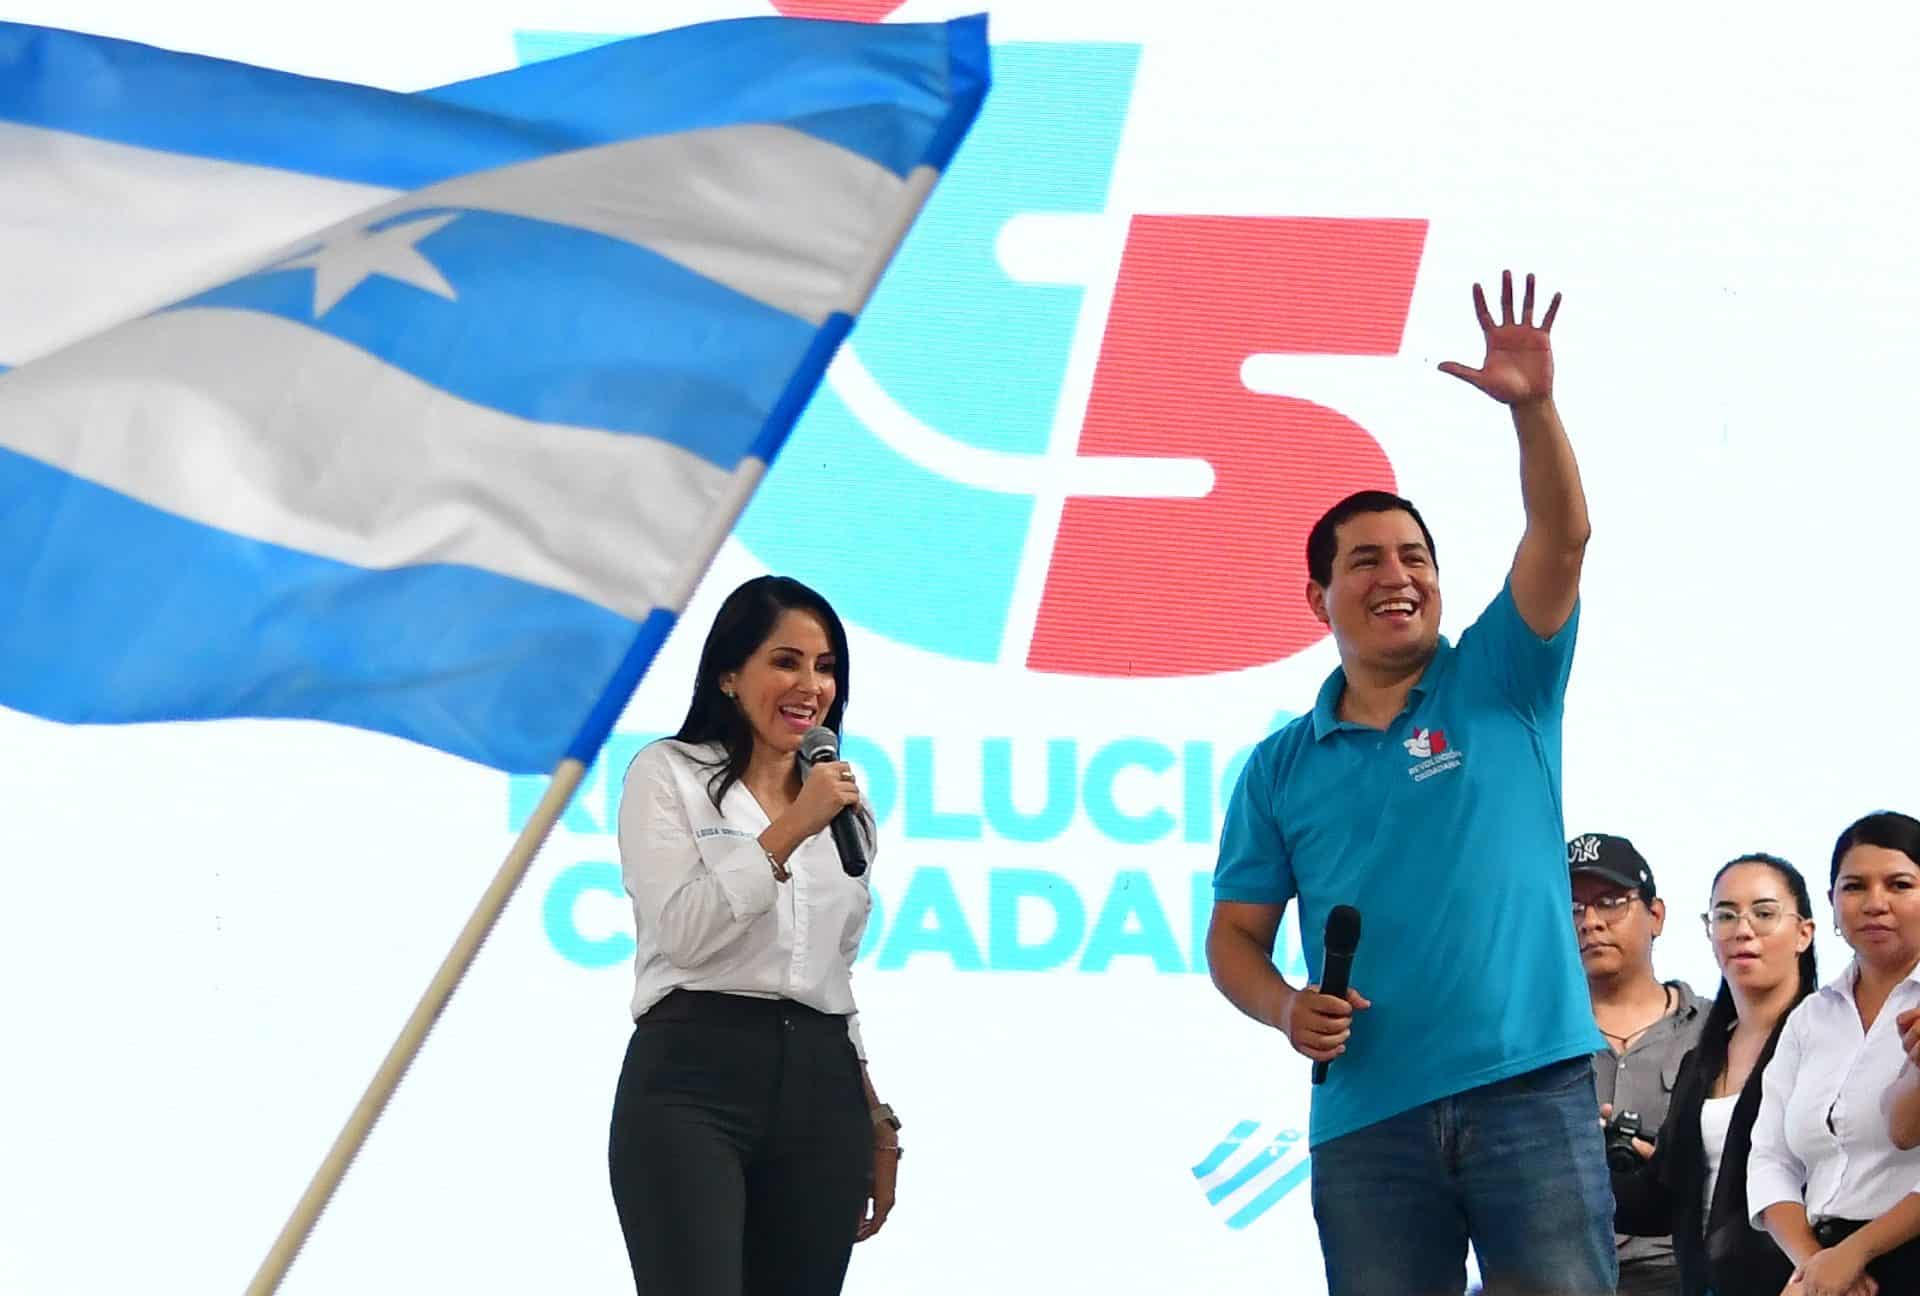 Movimiento Revolución Ciudadana elects Luisa Gonzalez as candidate for presidency at a massive event in Portoviejo, Manabí in Ecuador. Photo: Prensa Latina.